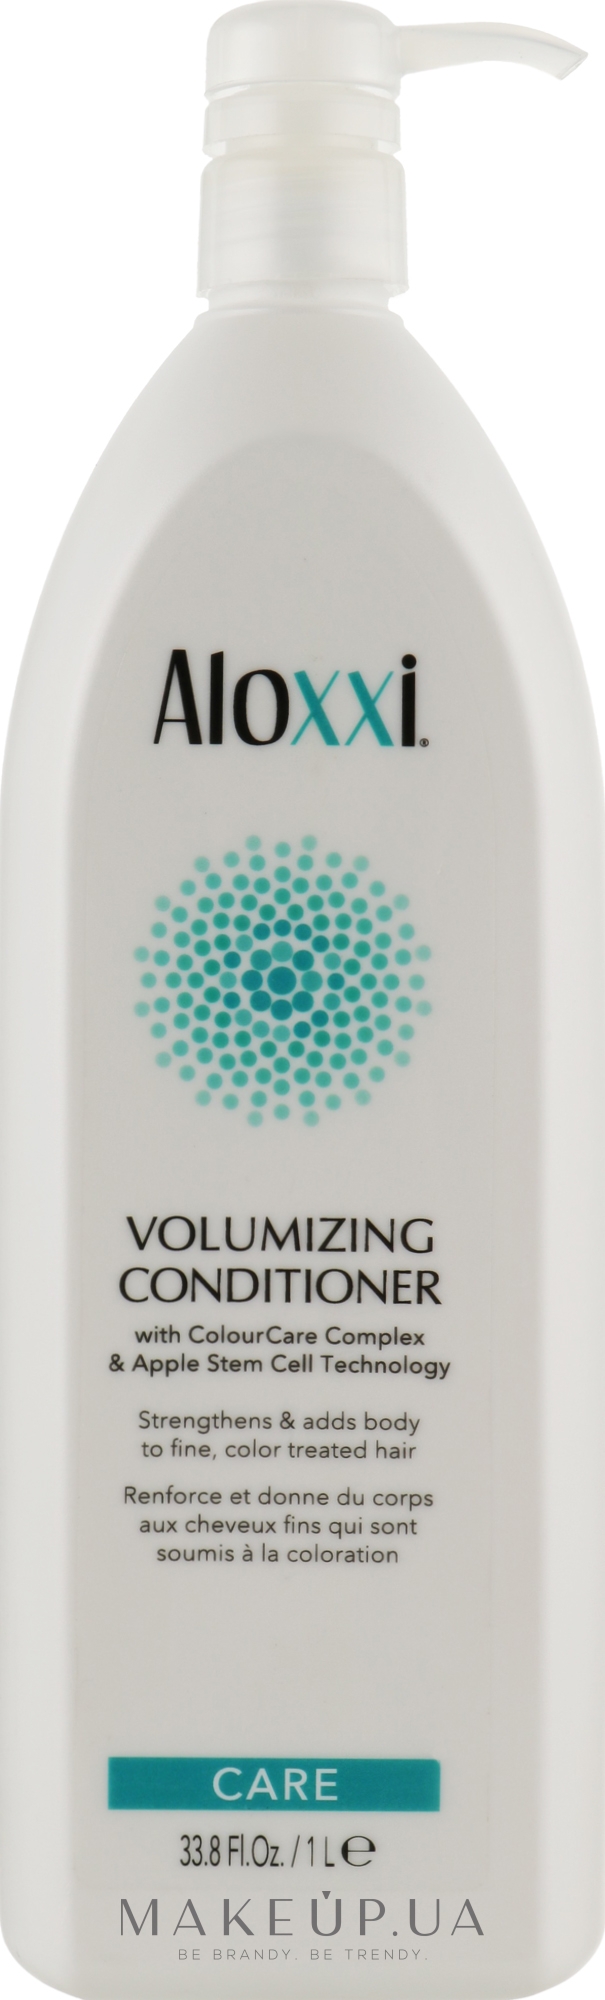 Кондиционер для создания объема волос - Aloxxi Volumizing Conditioner — фото 1000ml